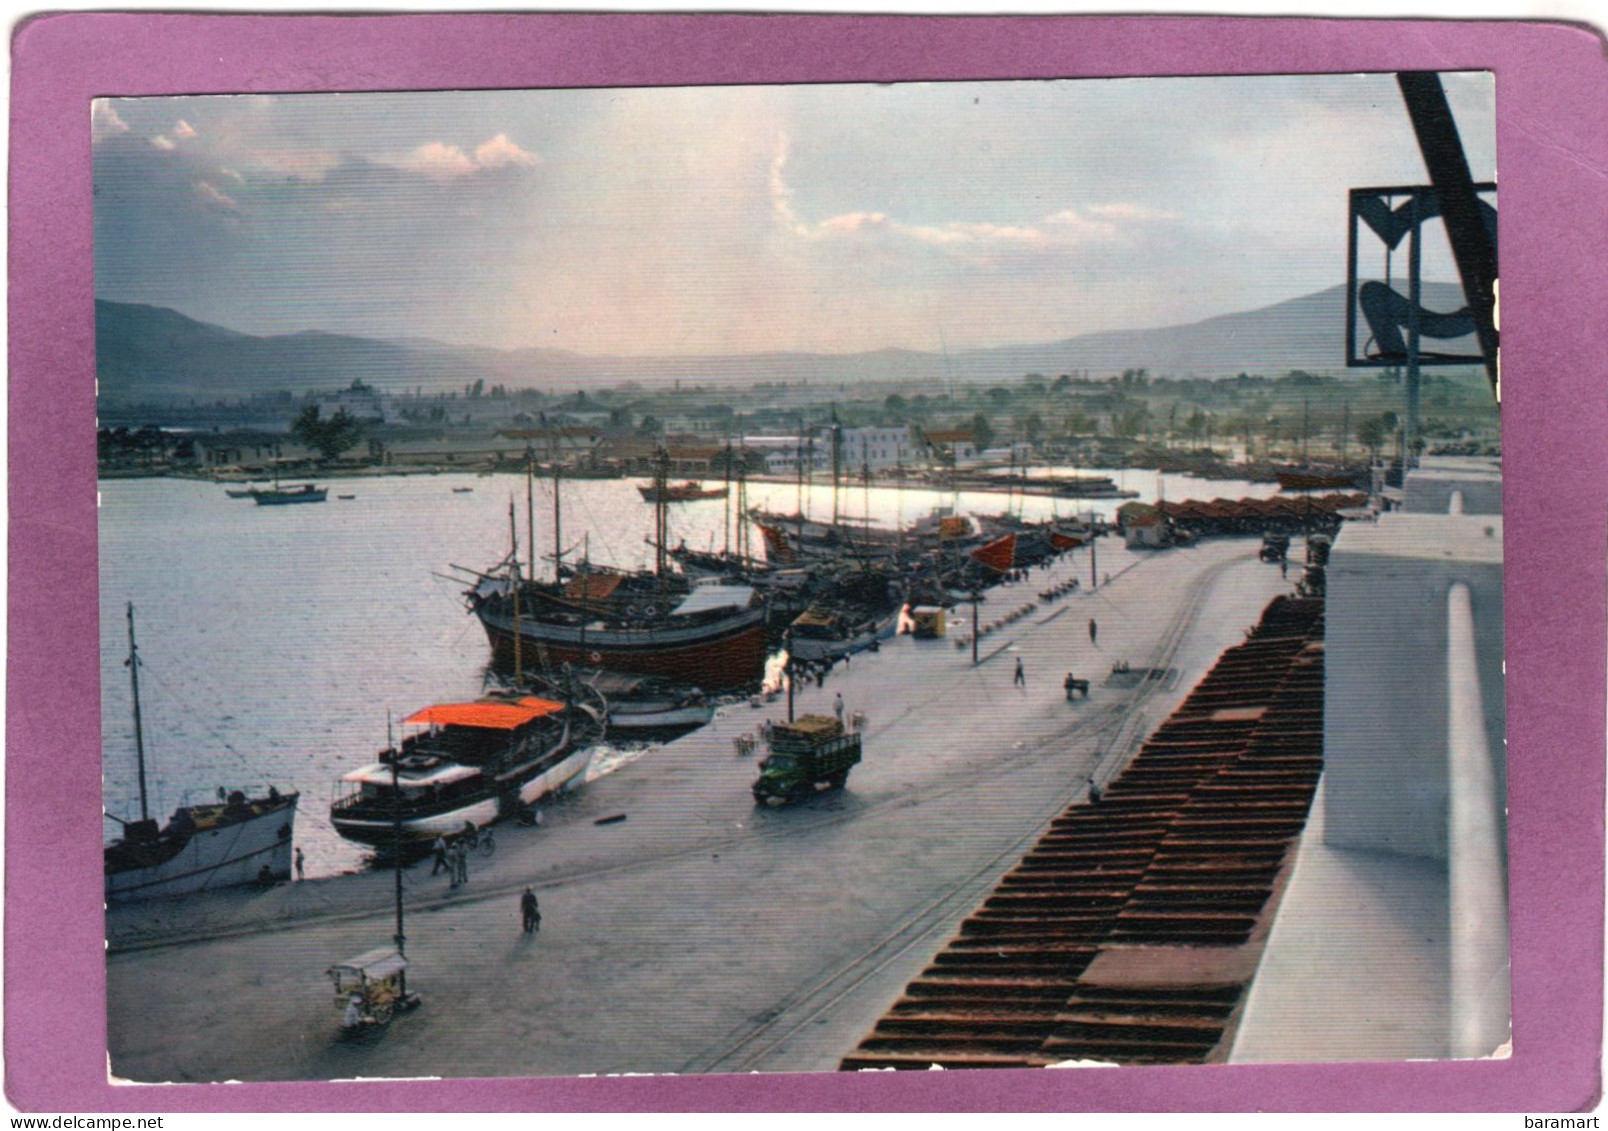 ΒΟΛΟΣ  'Aπό Τό λιμάνι  VOLOS Vue Du Port View Of The Harbour  Der Hafen - Grecia